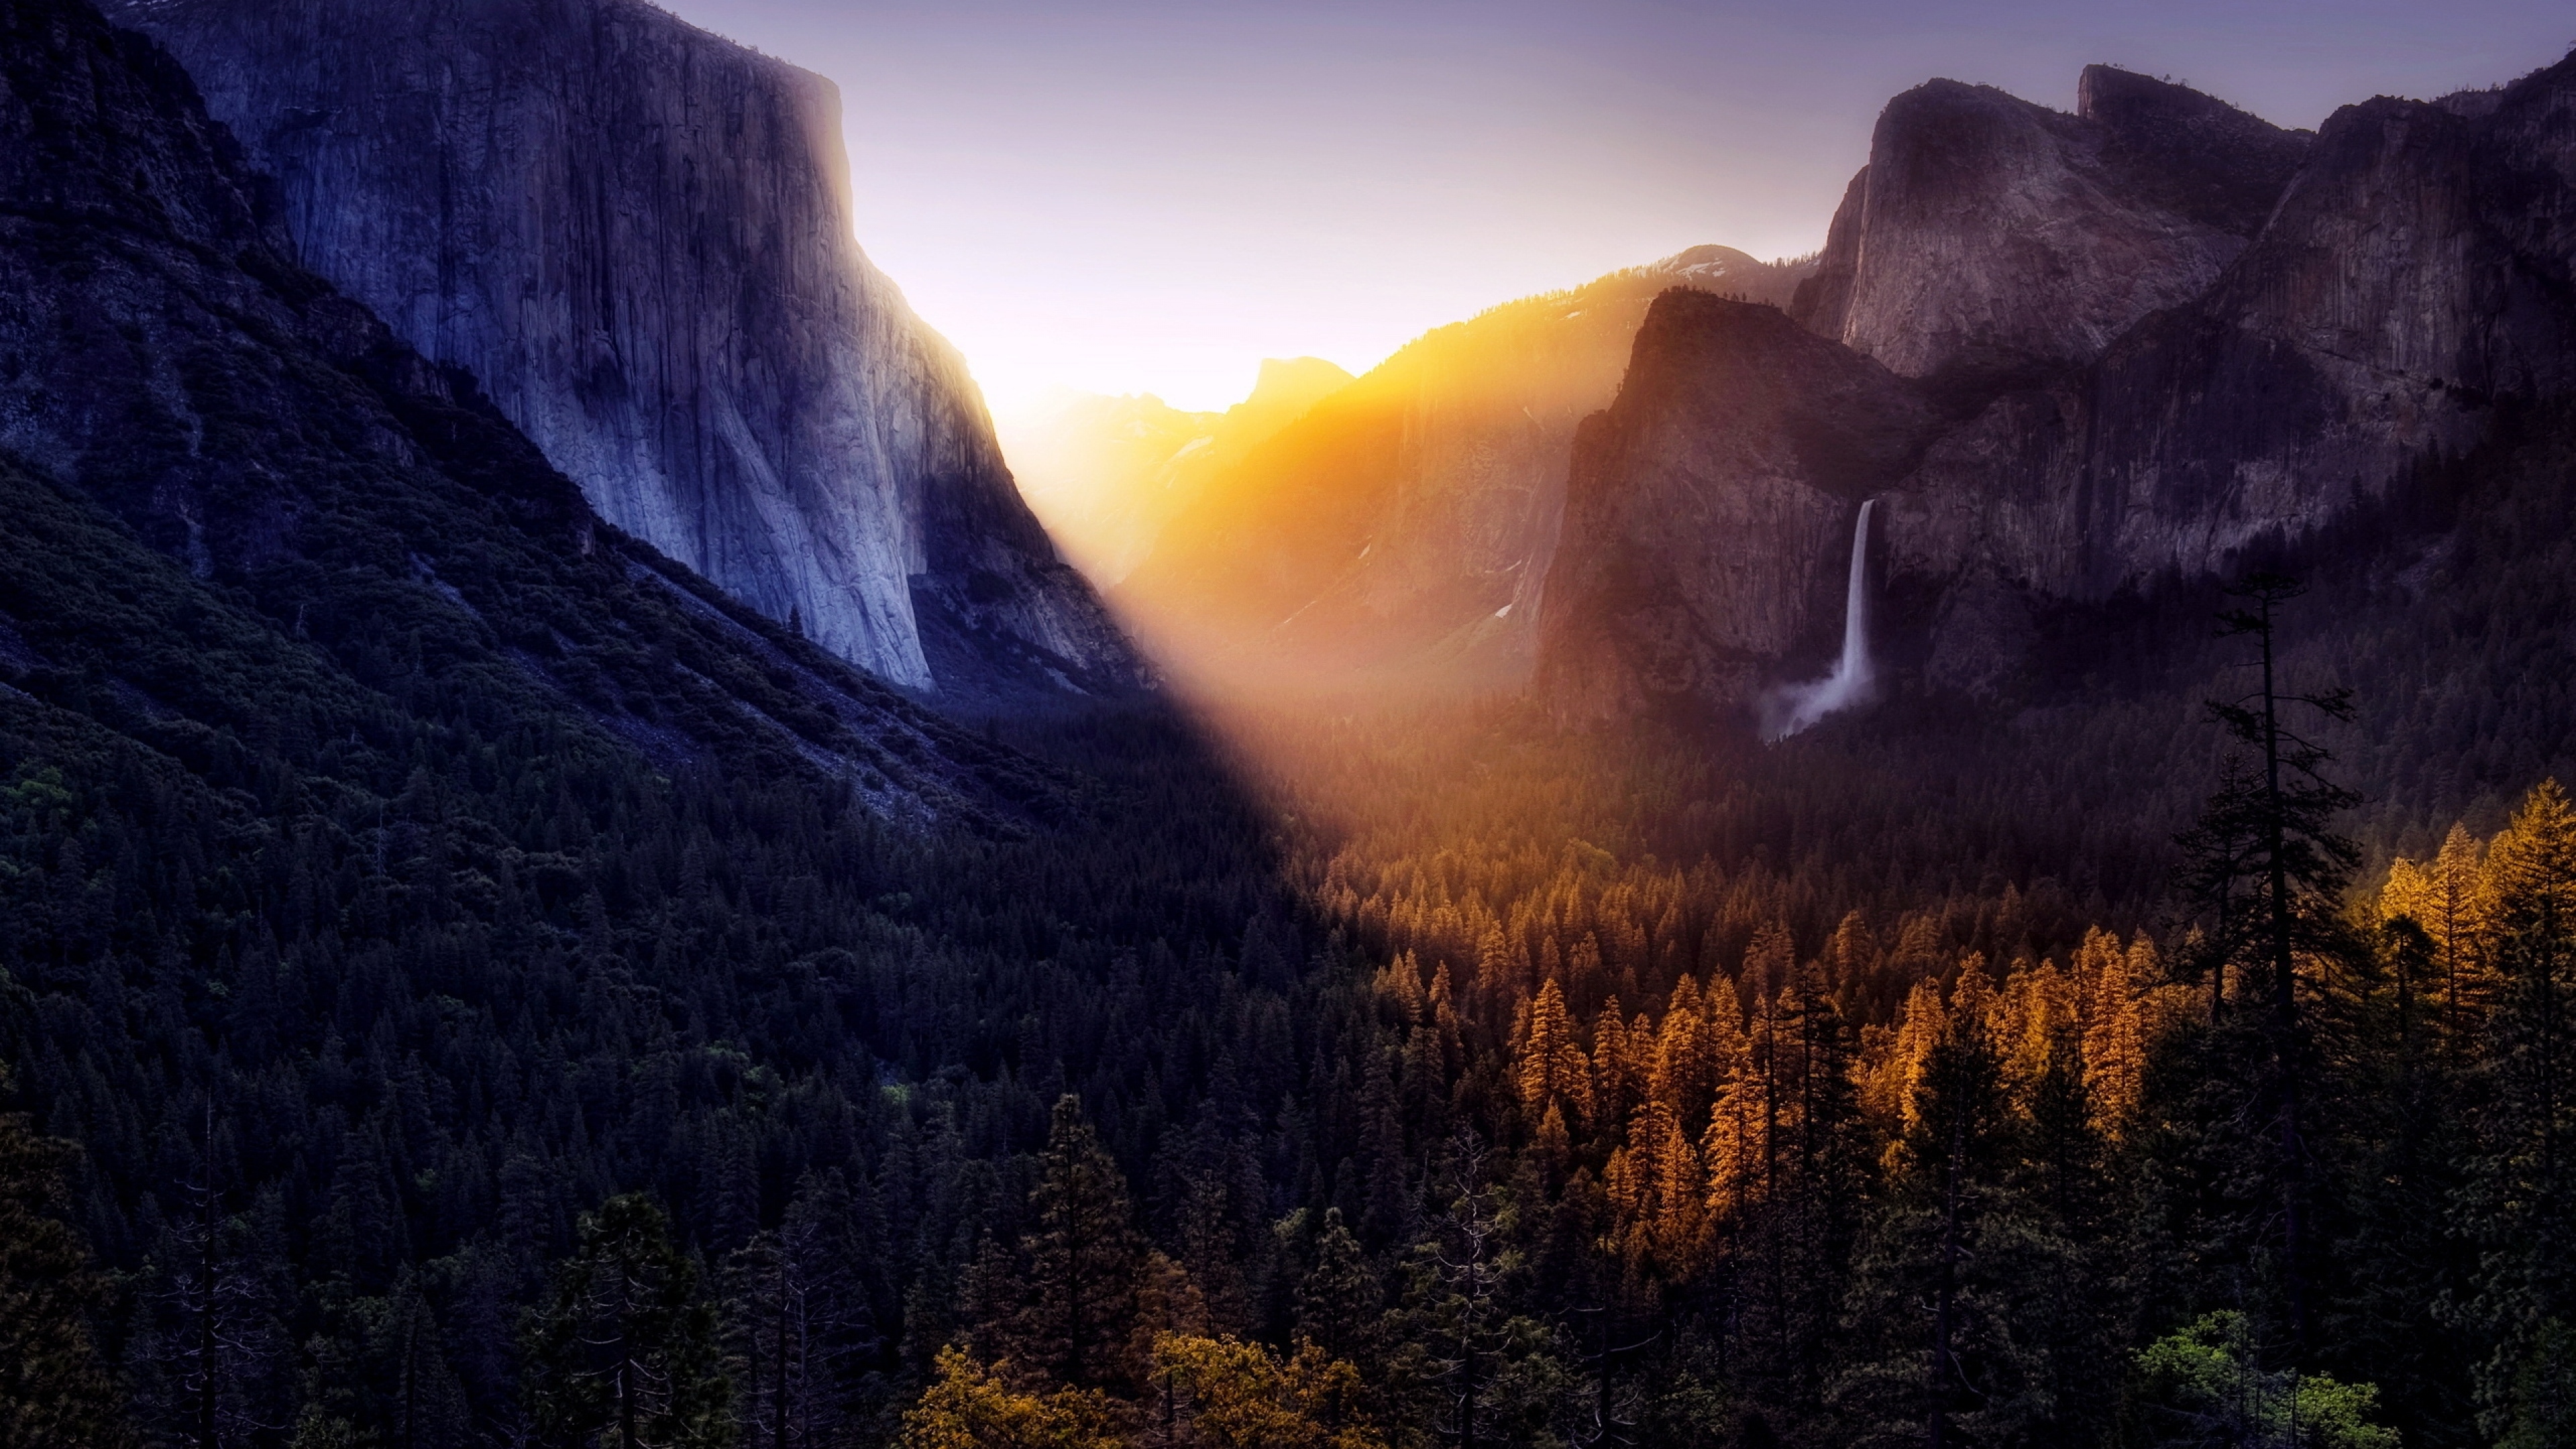 Фотография размером 1024 2048. Долина Йосемити, США. 9. Долина Йосемити, США. Национальный парк Yosemite, США. Национальный парк Йосемити ночью.